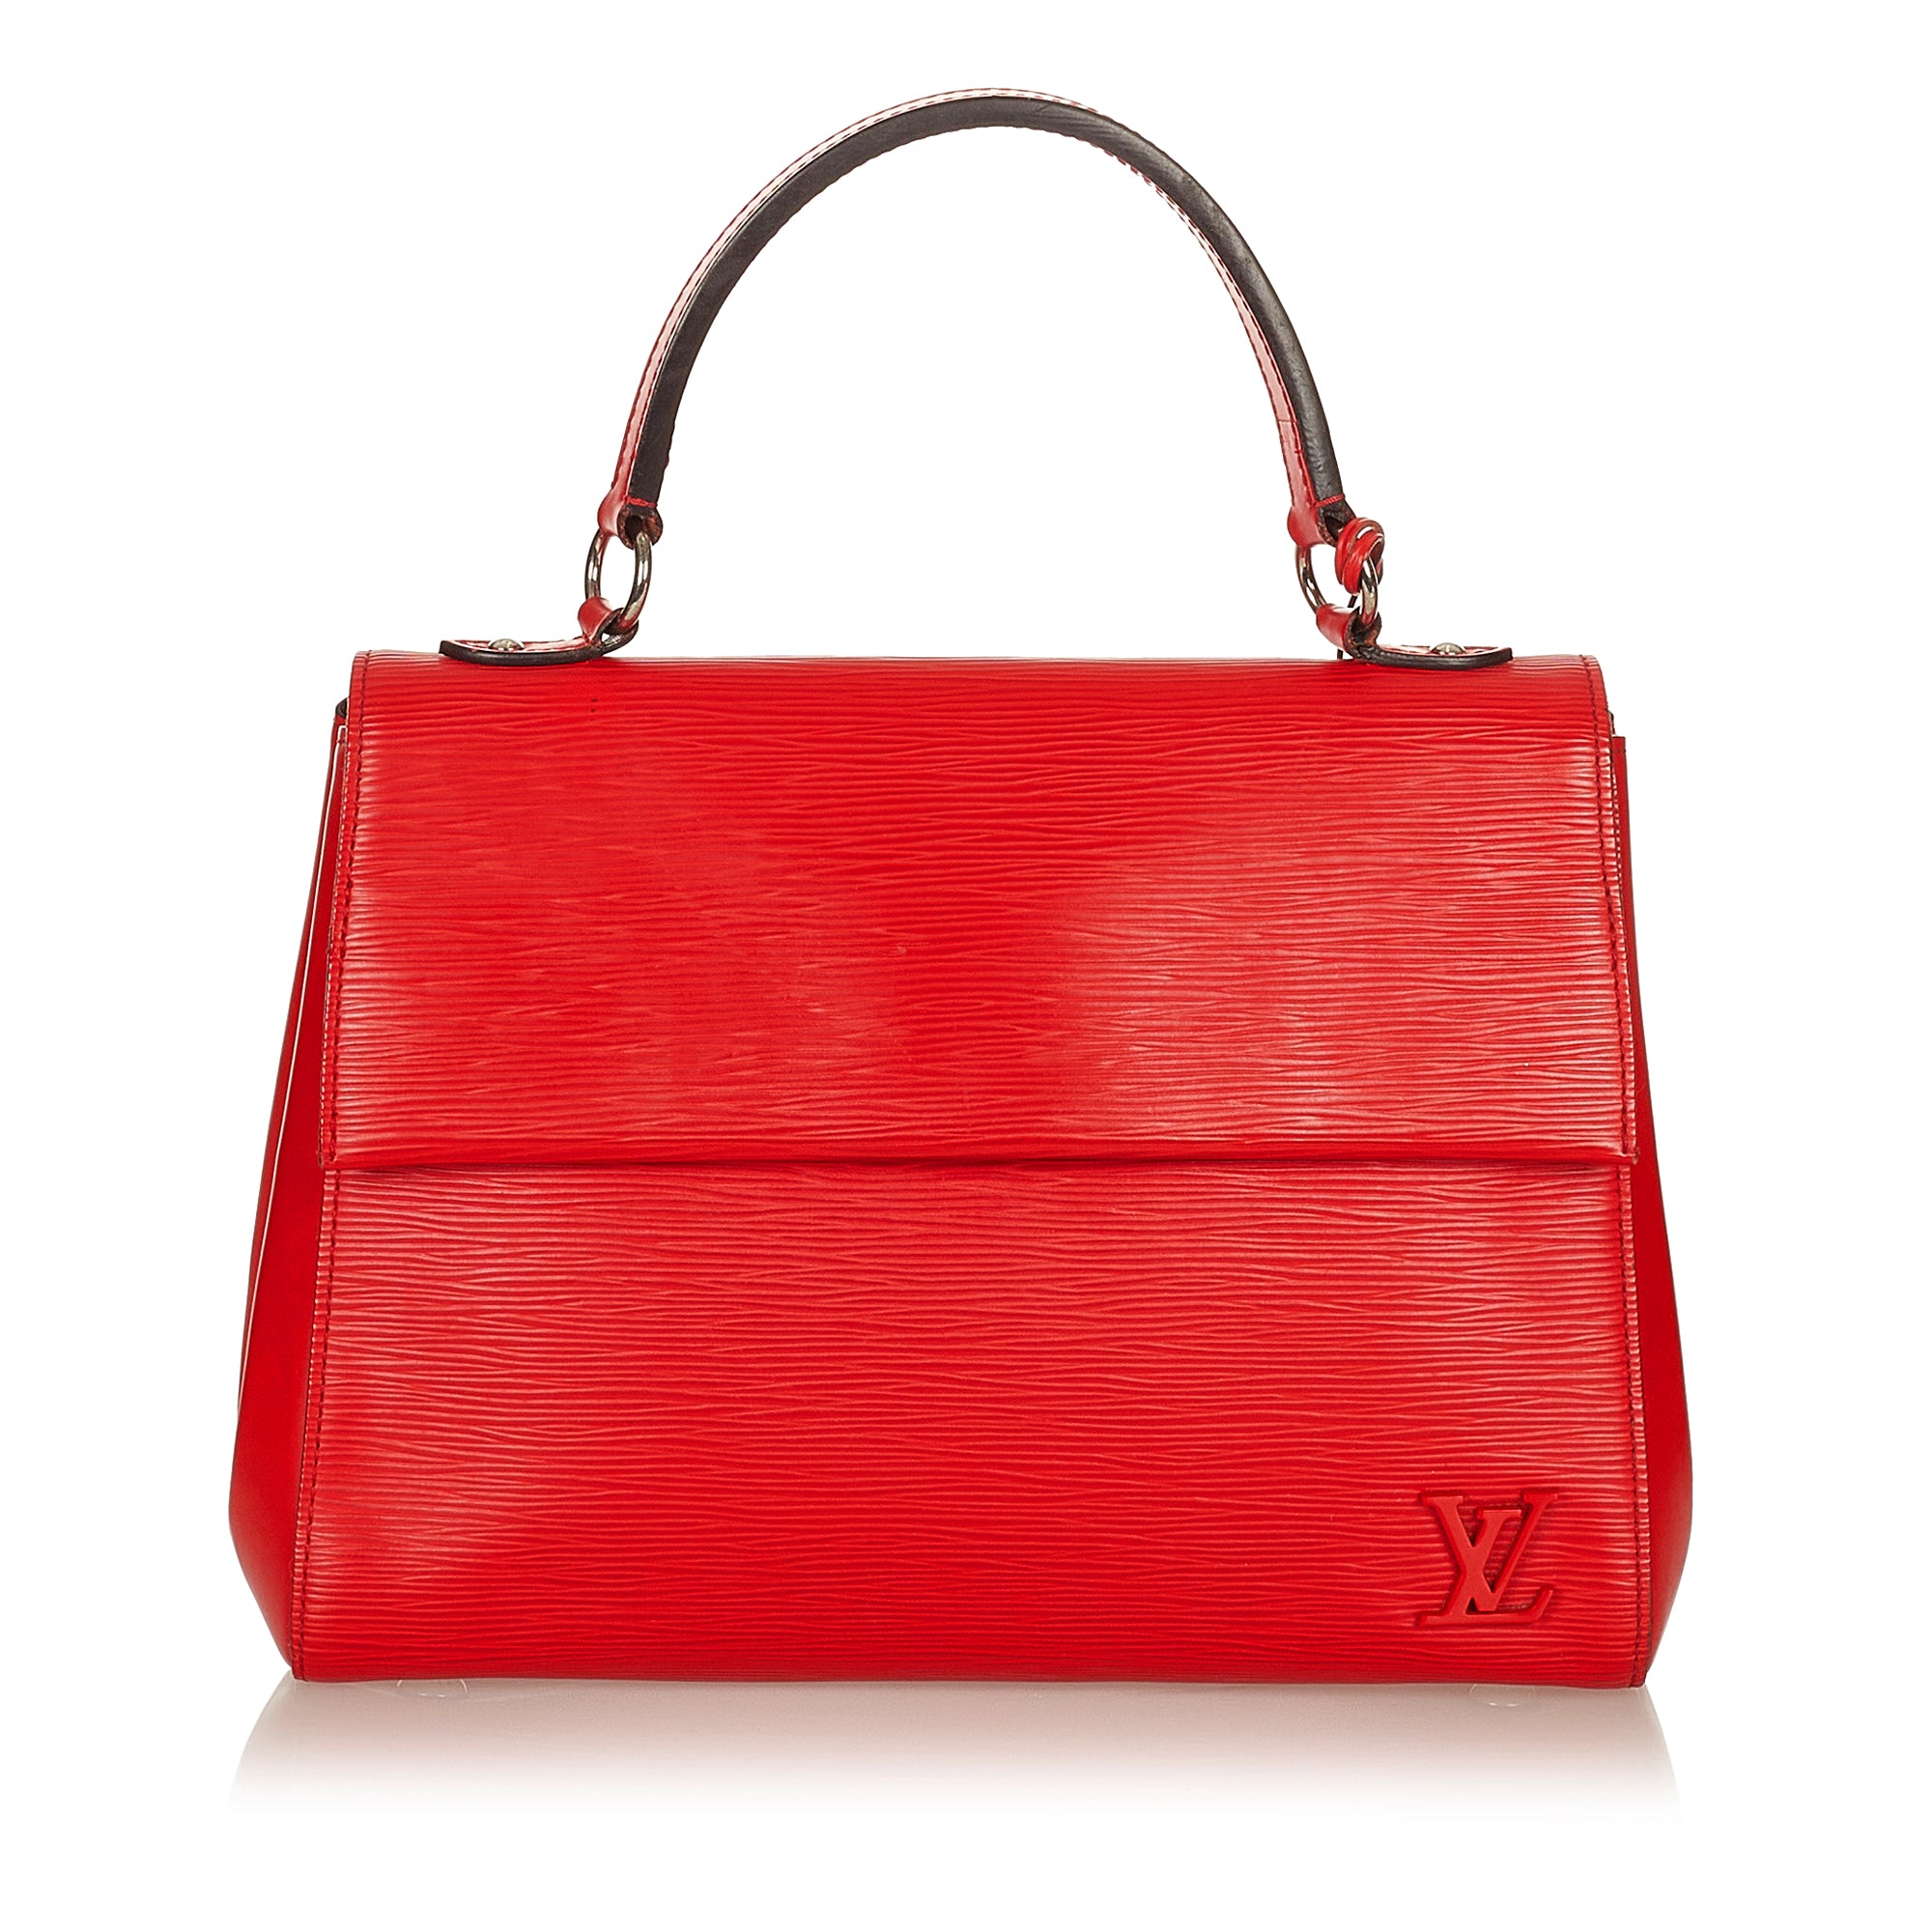 Louis+Vuitton+Cluny+Black+Shoulder+Bag+Epi+Leather for sale online